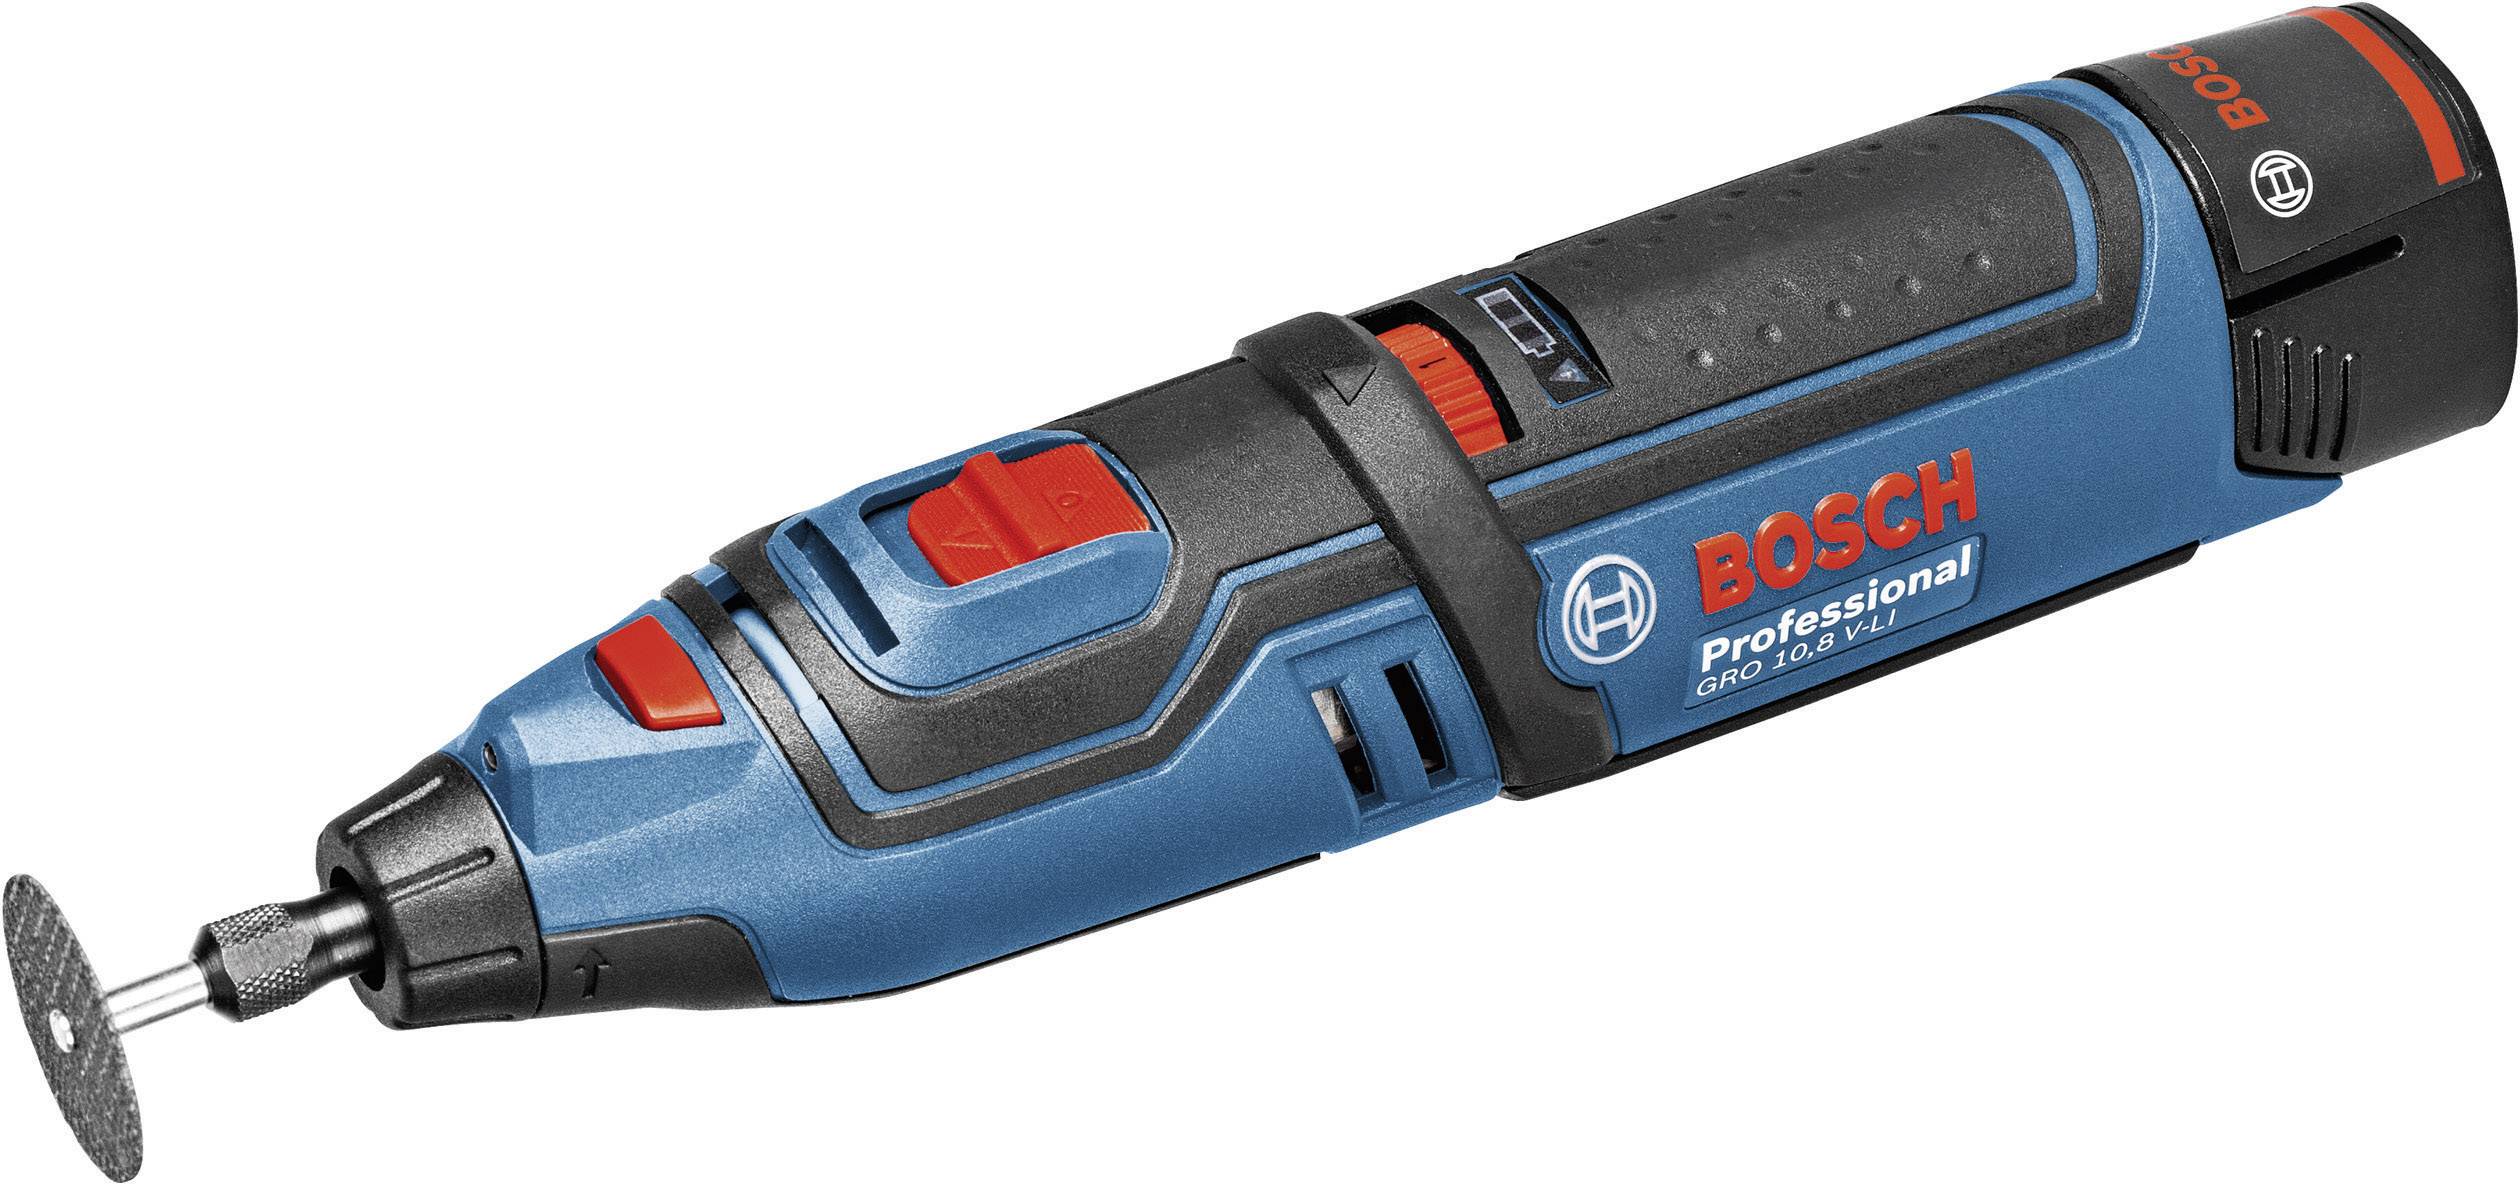 Bosch Professional GRO V LI 06019C5001 Batteridrevet multifunktionsværktøj inkl. ekstra inkl. tilbehør, Ku | Conradelektronik.dk